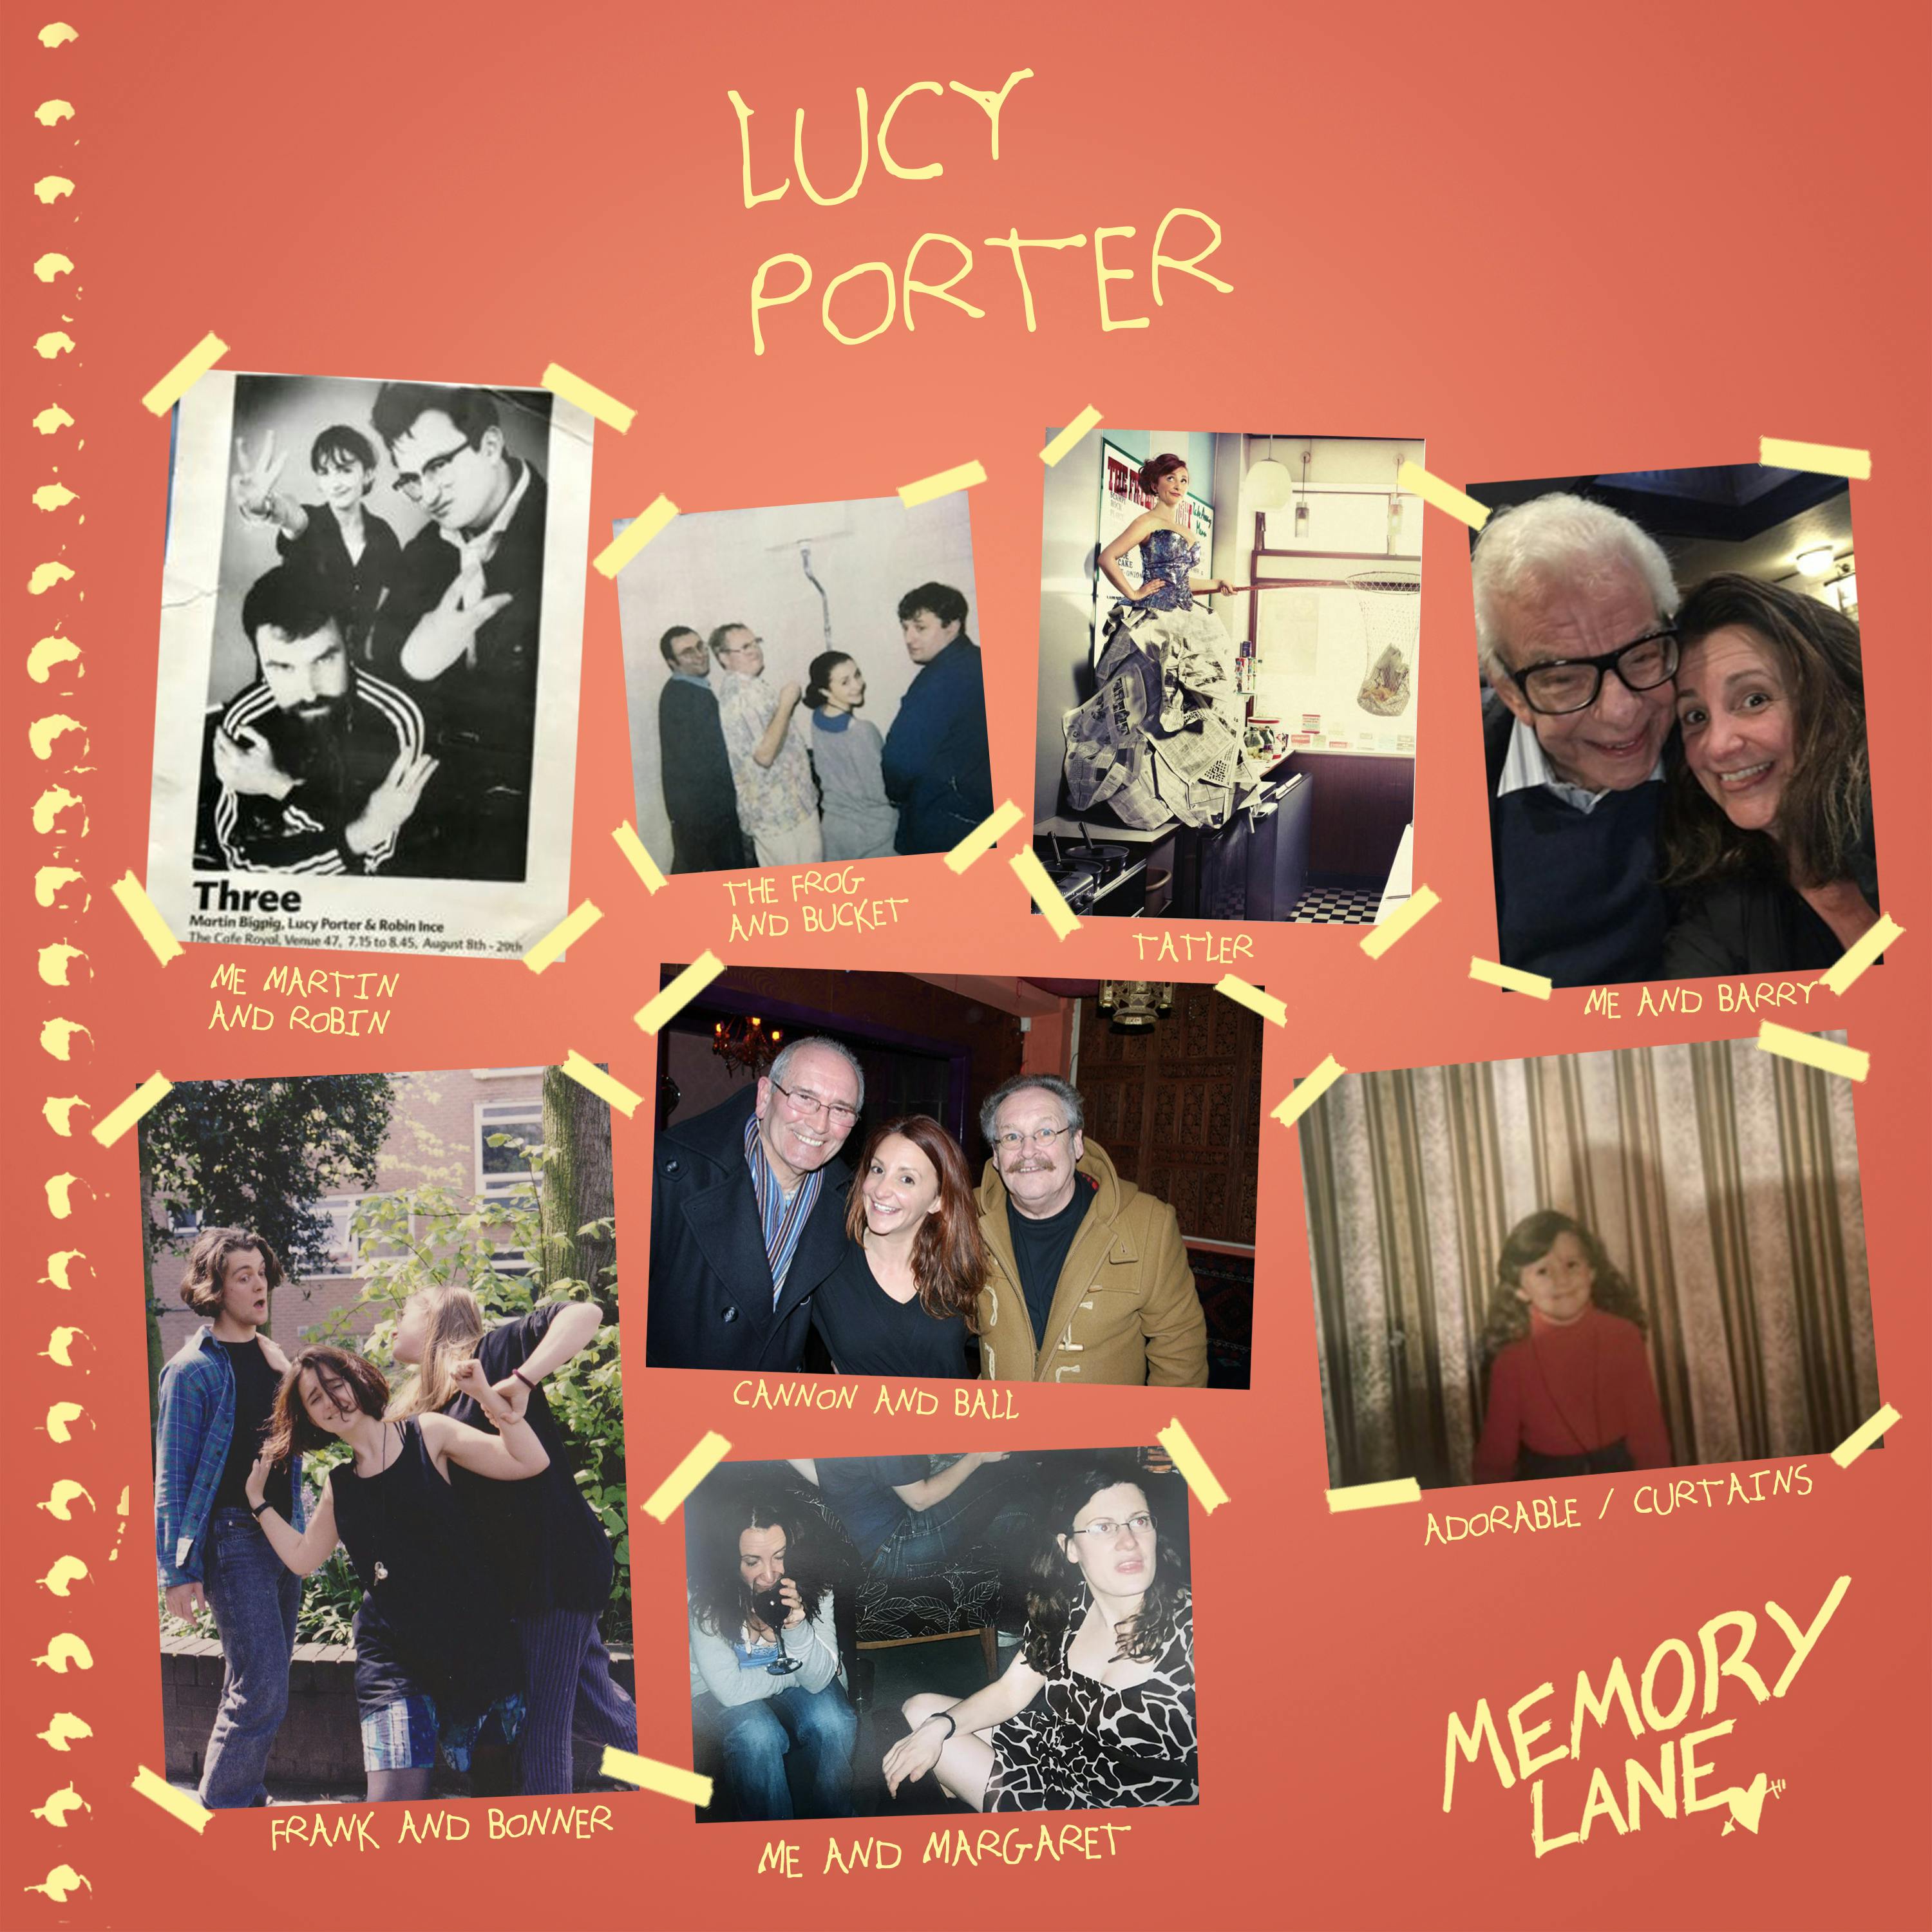 S03 E10: Lucy Porter